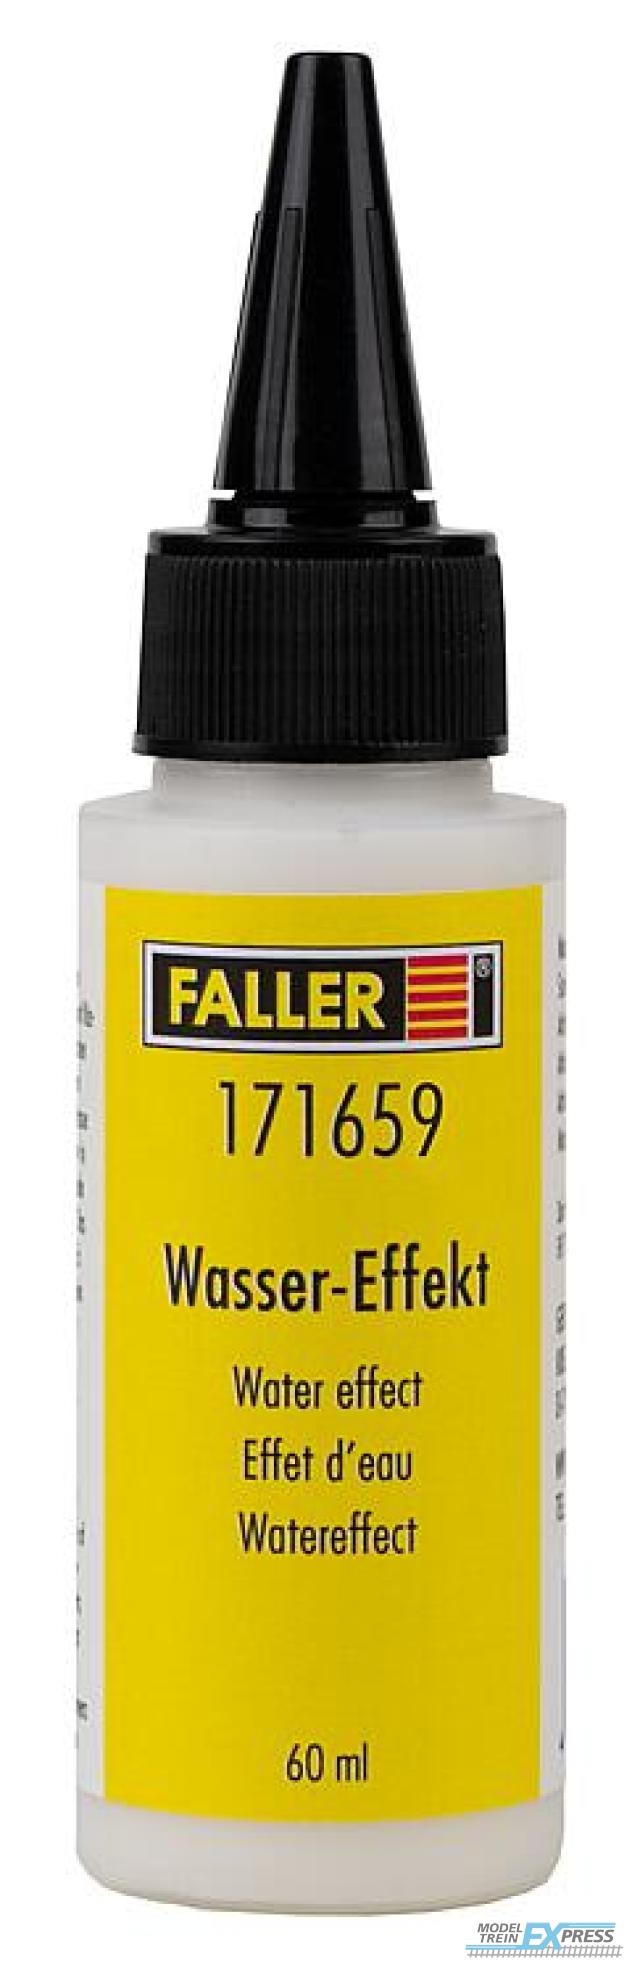 Faller 171659 1/87 WATEREFFECT 60 ML